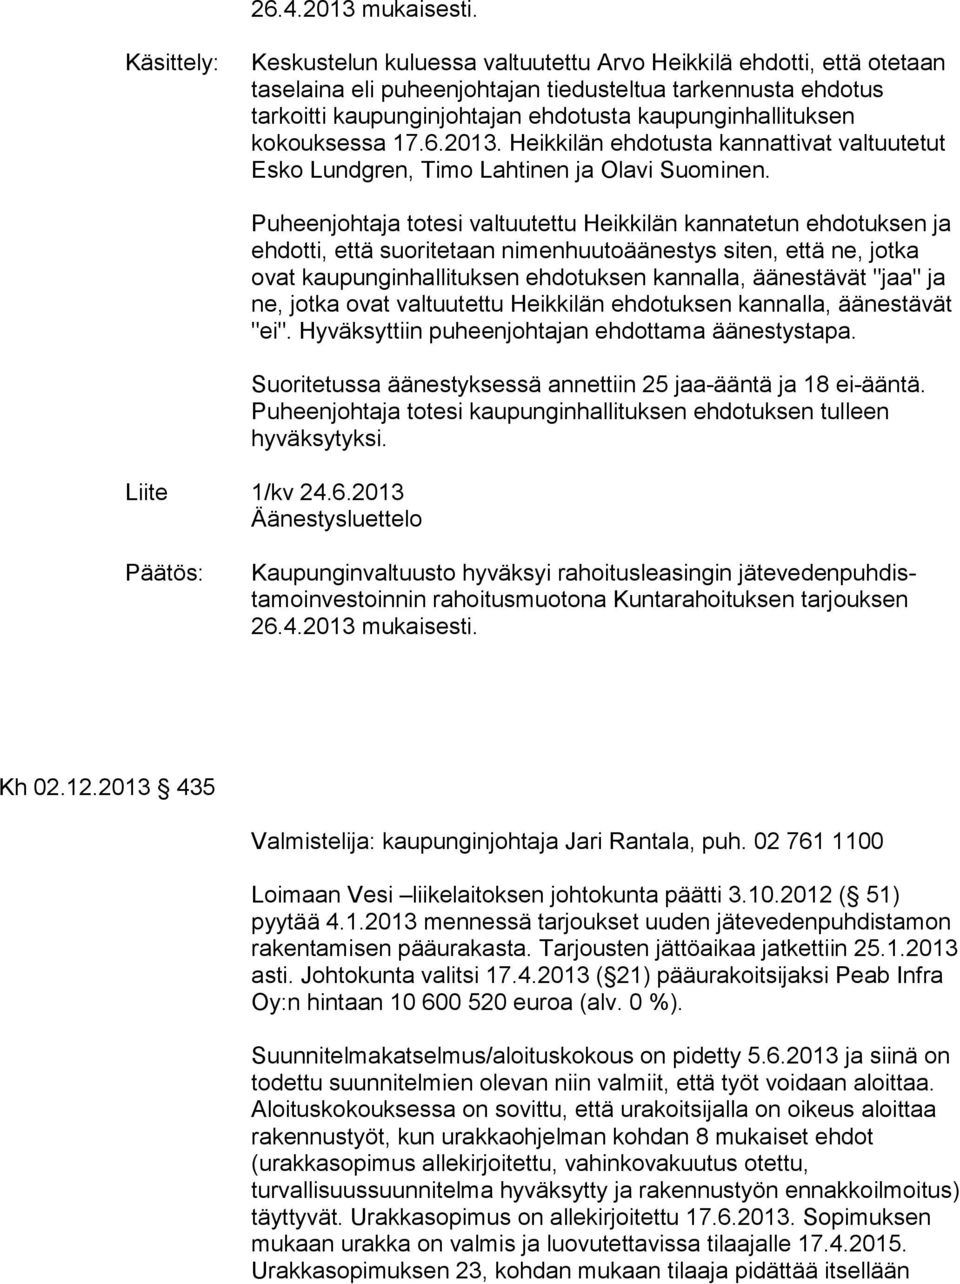 kaupunginhallituksen kokouksessa 17.6.2013. Heikkilän ehdotusta kannattivat valtuutetut Esko Lundgren, Timo Lahtinen ja Olavi Suominen.